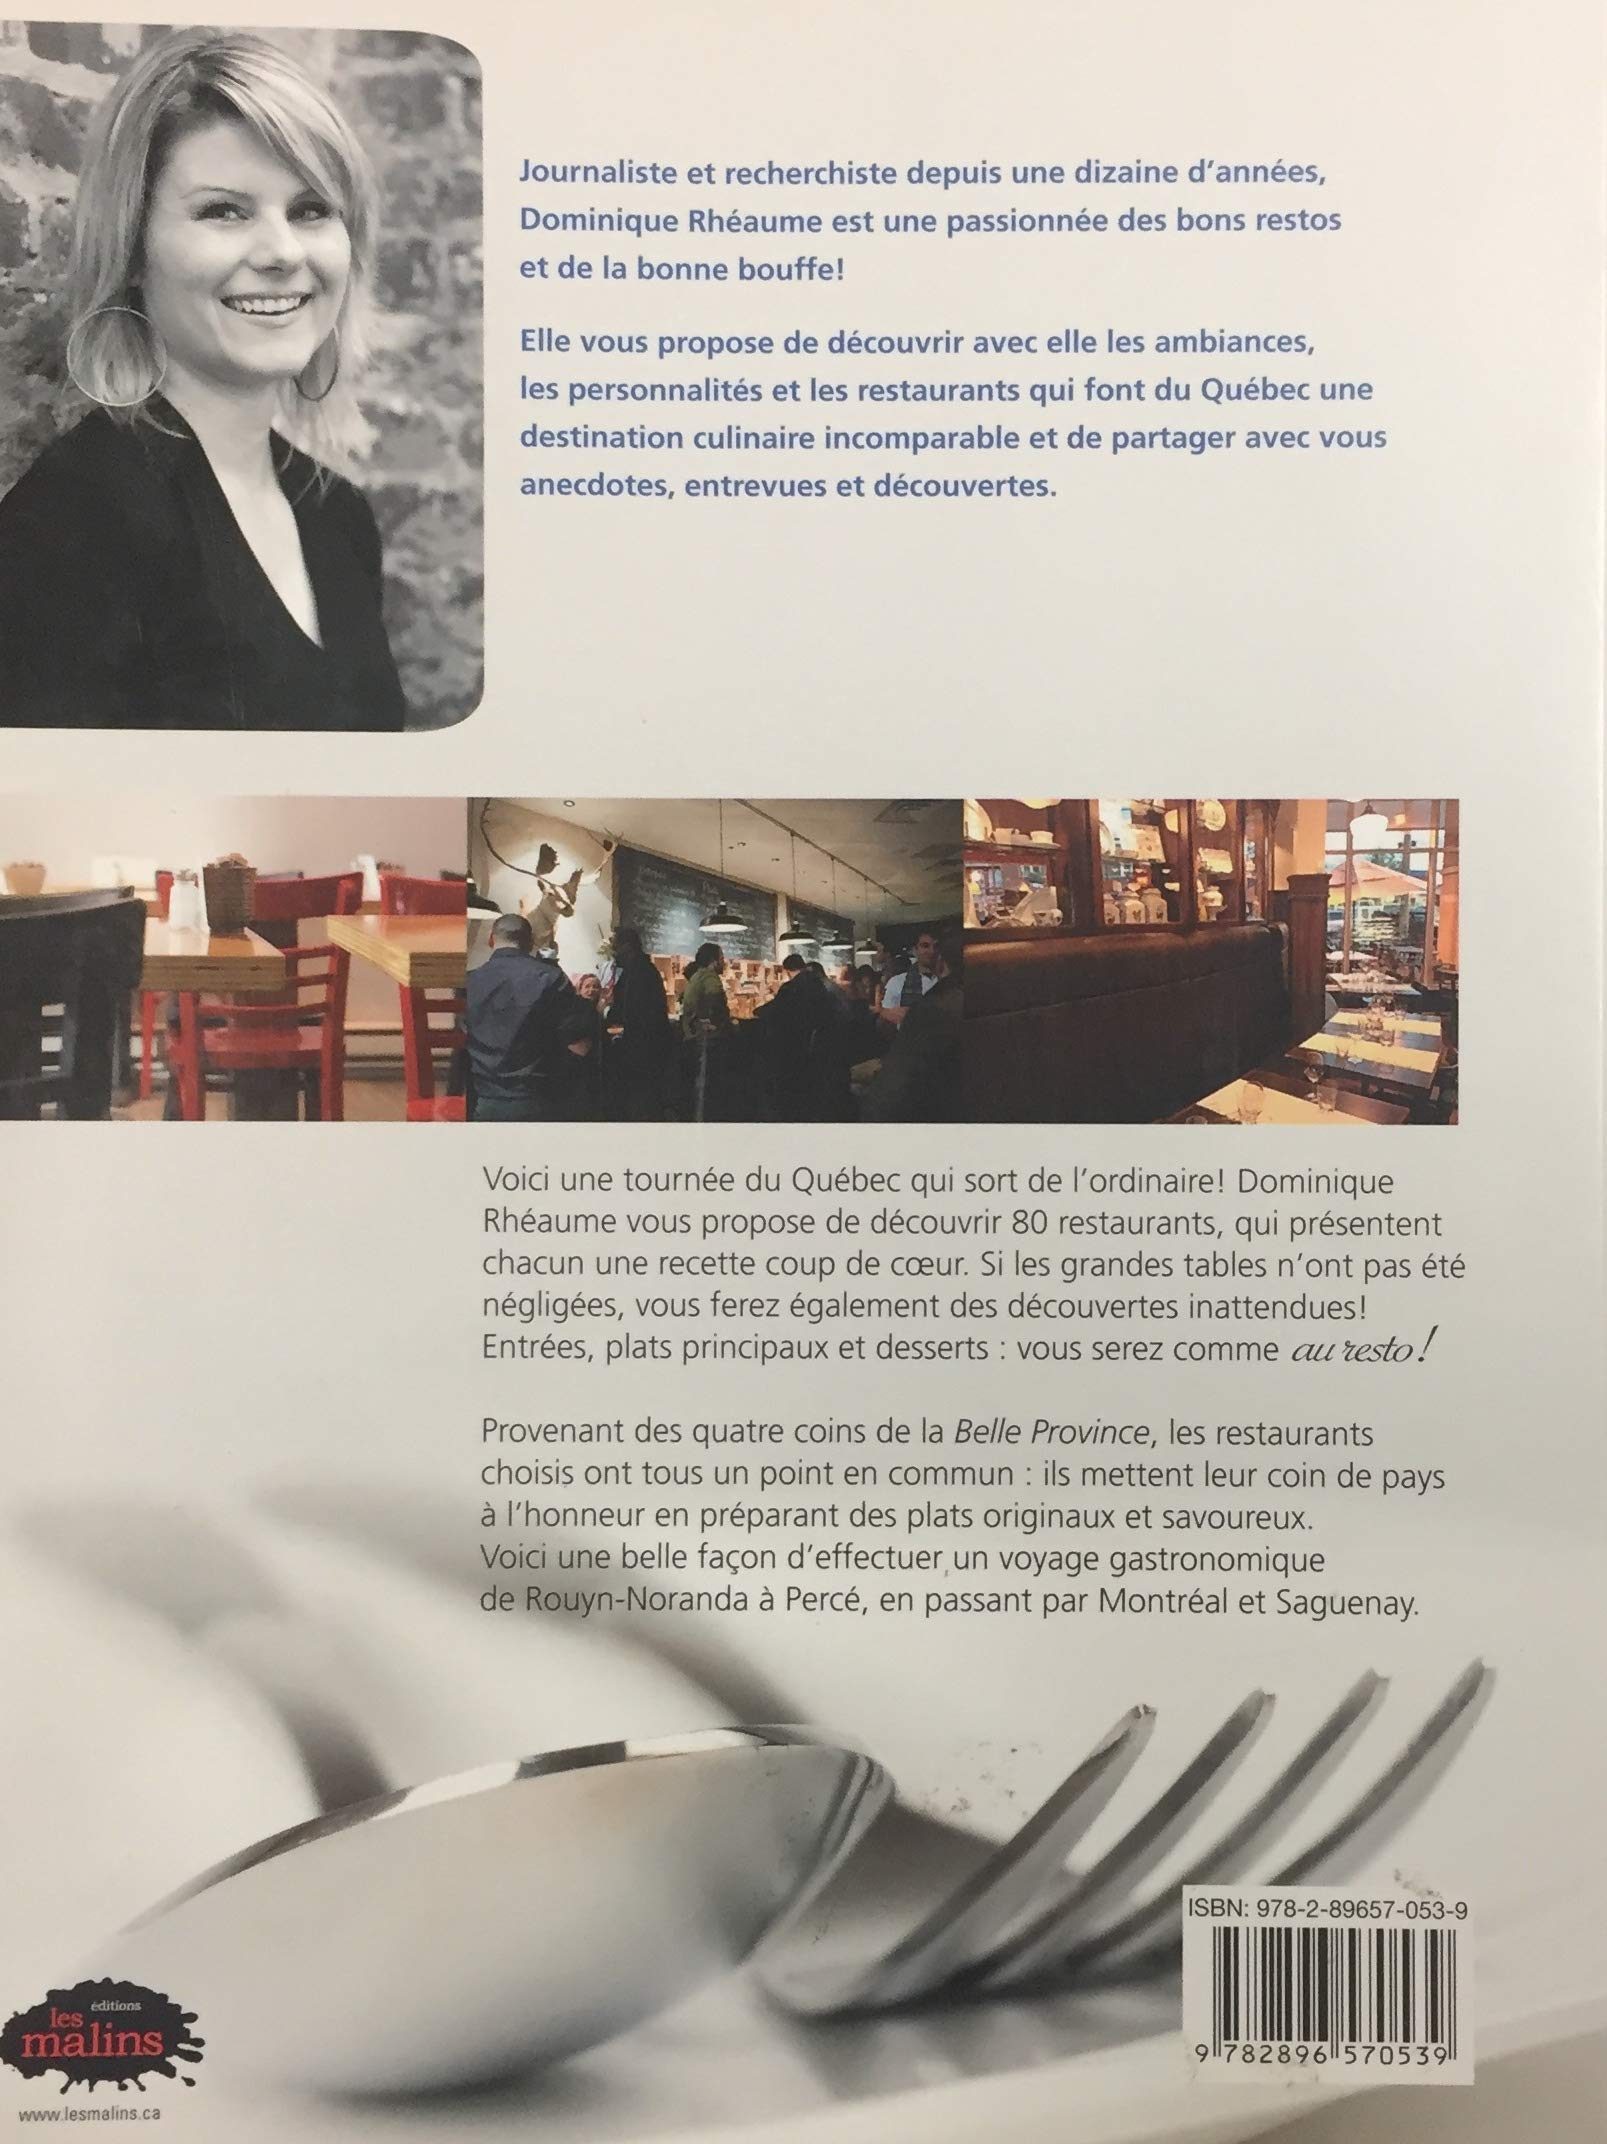 Au resto! : 80 Restaurants du Québec se dévoilent (Dominique Rhéaume)